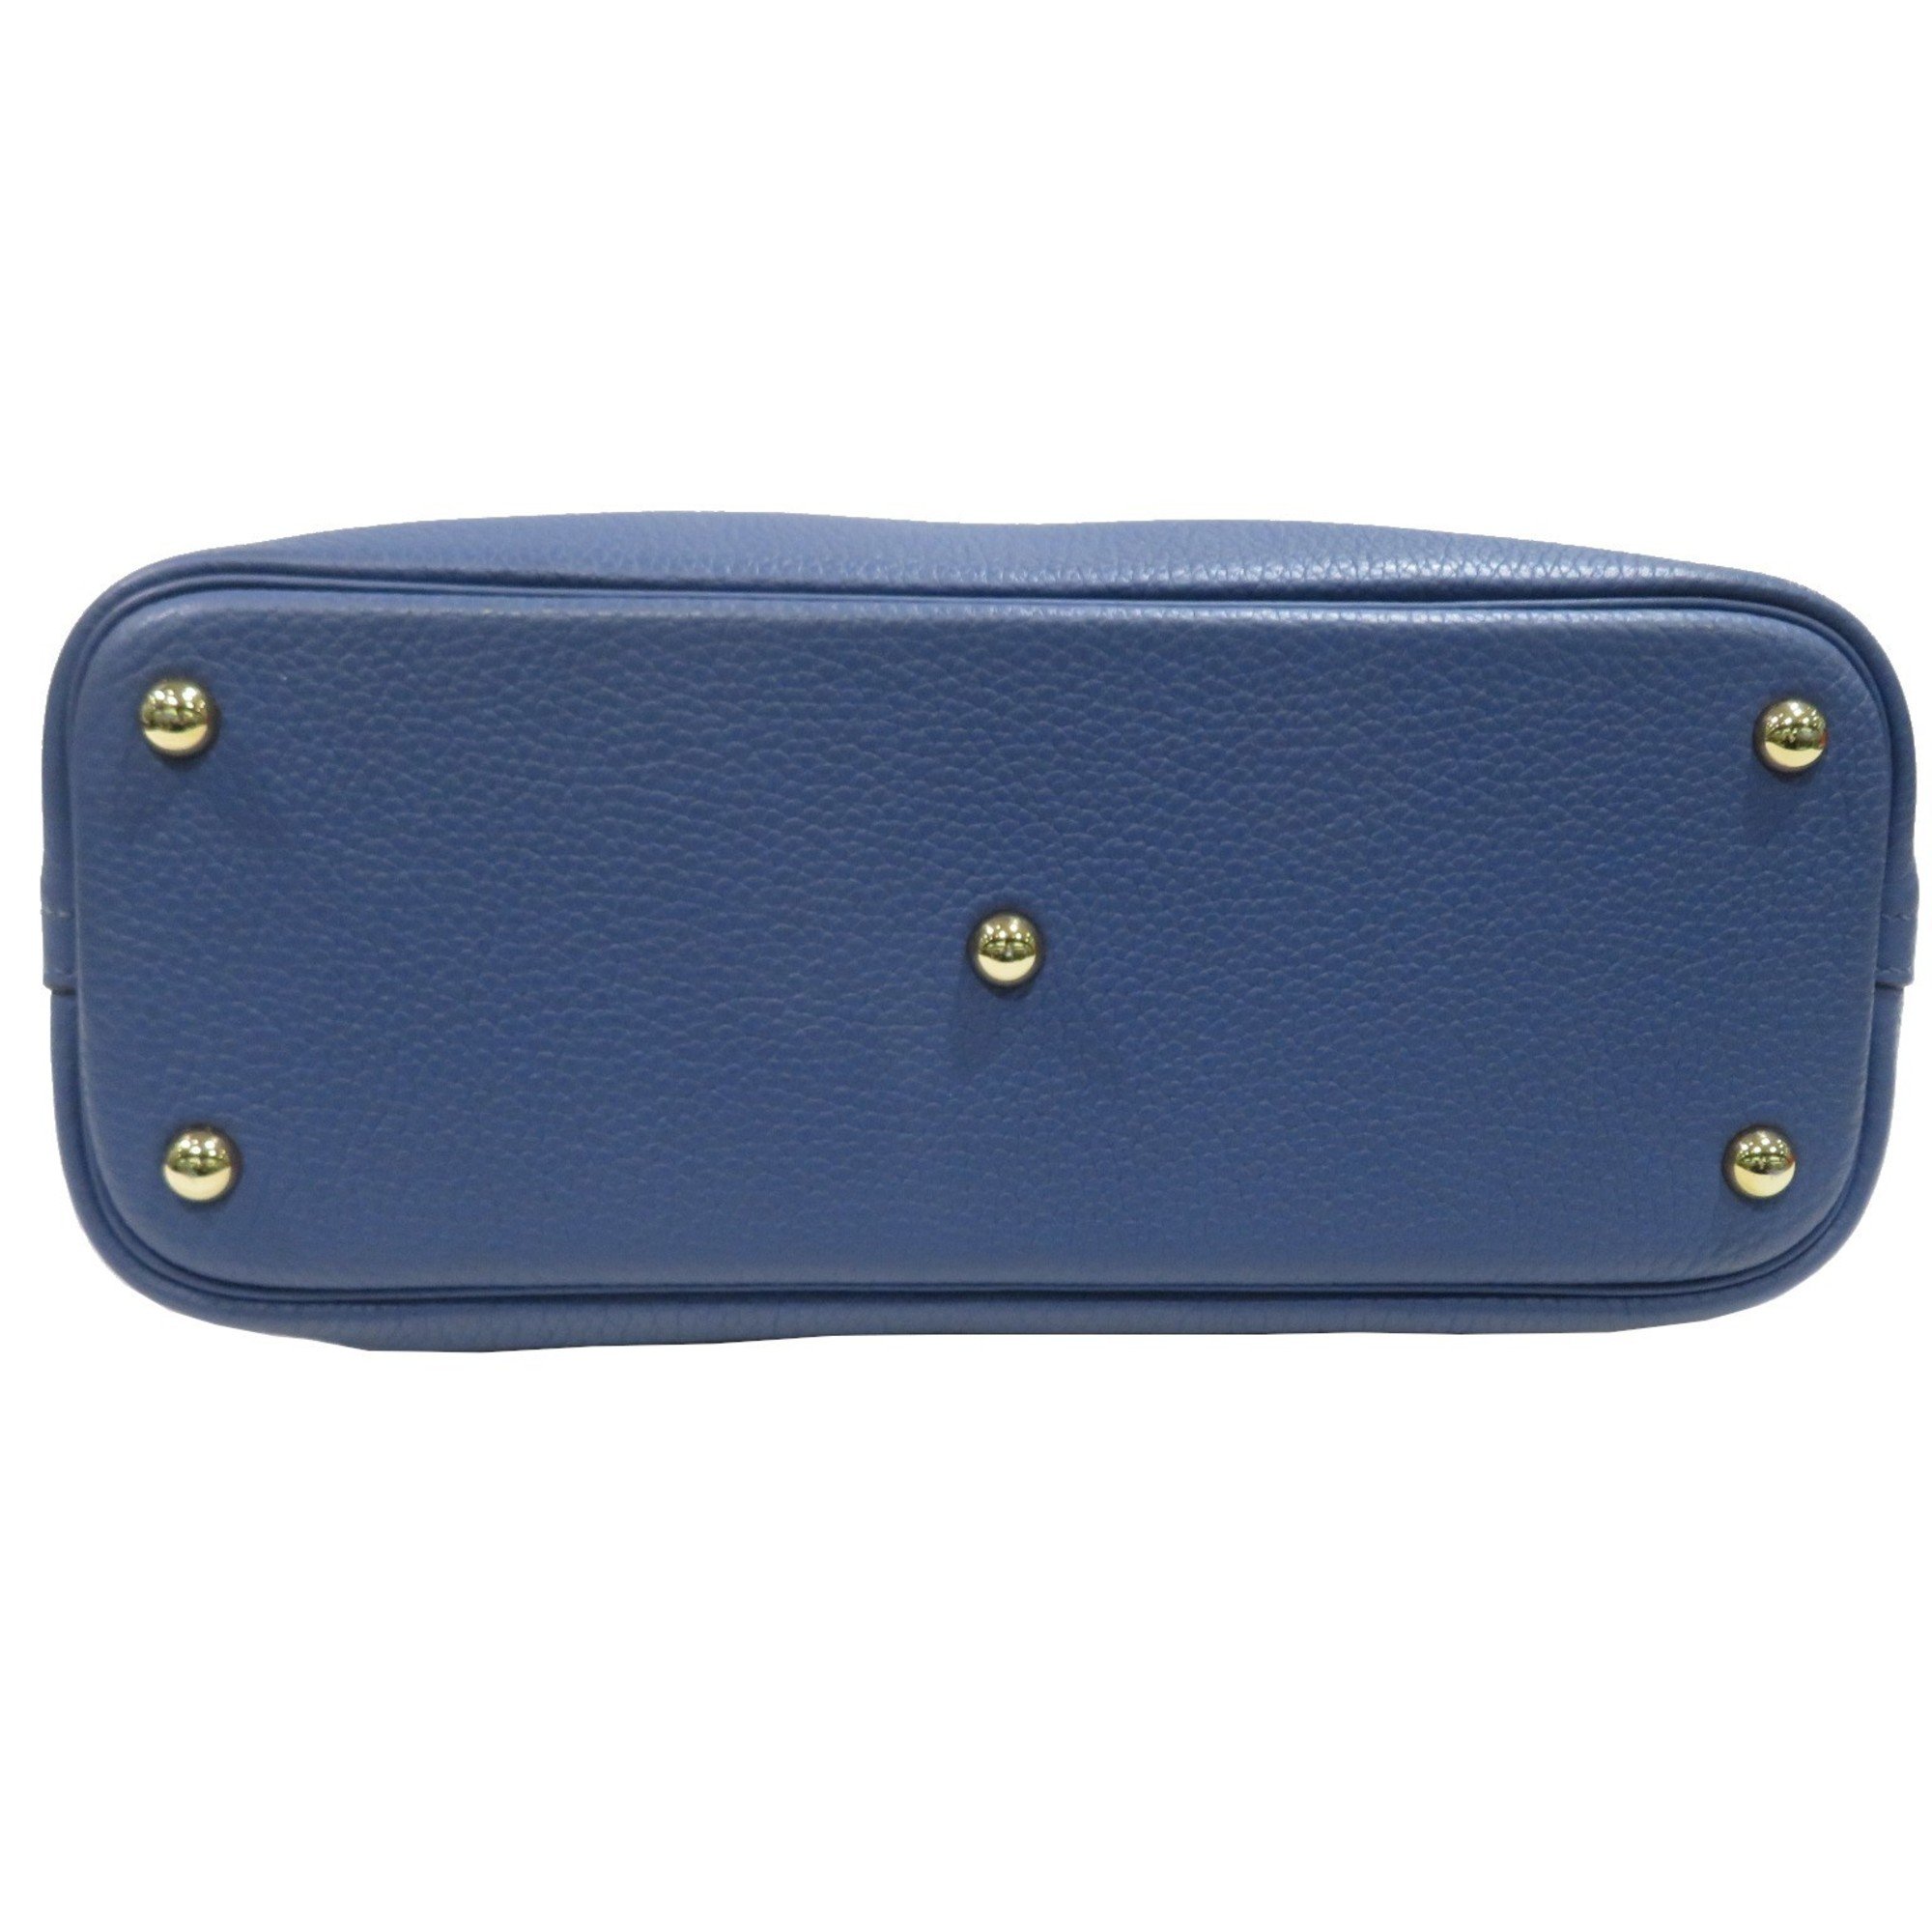 HERMES Bolide 31 Handbag Blue Brighton G Hardware Taurillon C Stamp Women's Men's Bag Leather